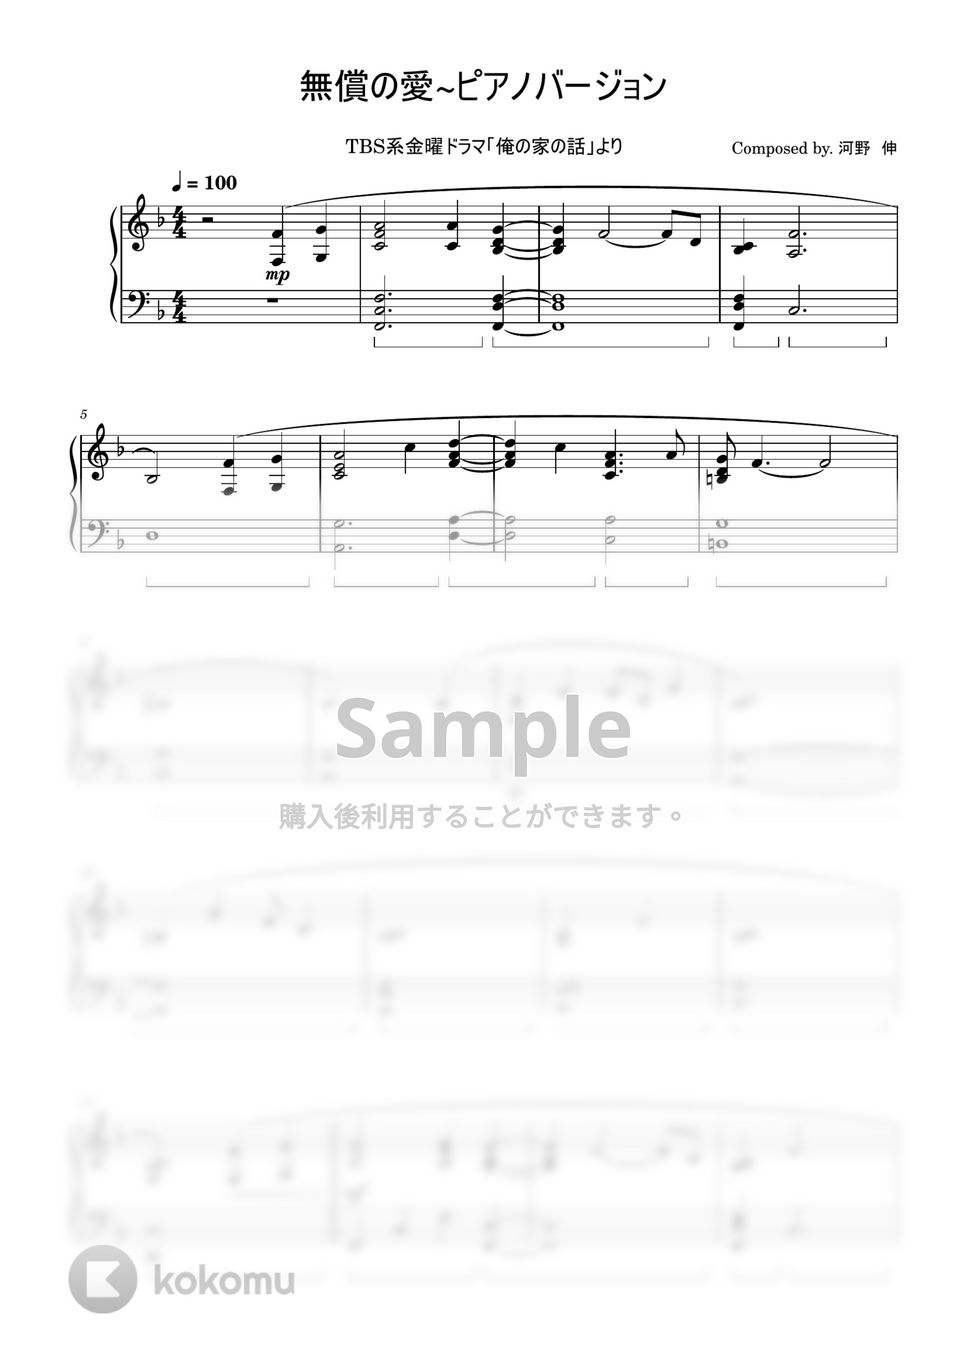 ドラマ「俺の家の話」 - 無償の愛 ~ピアノバージョン by ちゃんRINA。